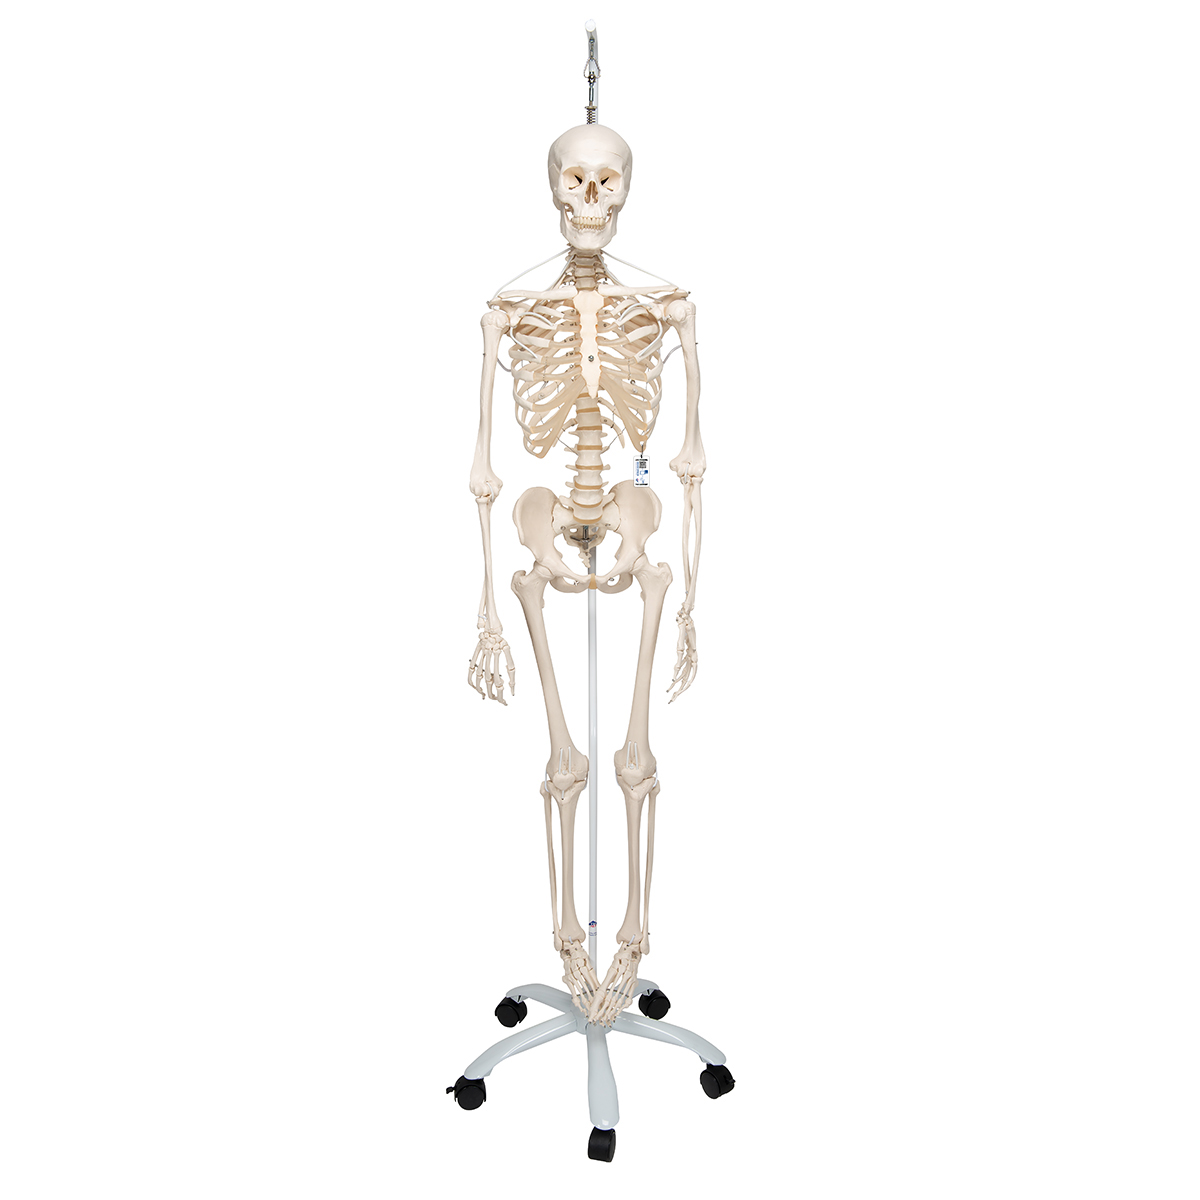 Menschliches Skelett Modell "Feldi", lebensgroß mit flexibel montierten Gelenken, an Metallhängestativ mit Rollen - 3B Smart Anatomy